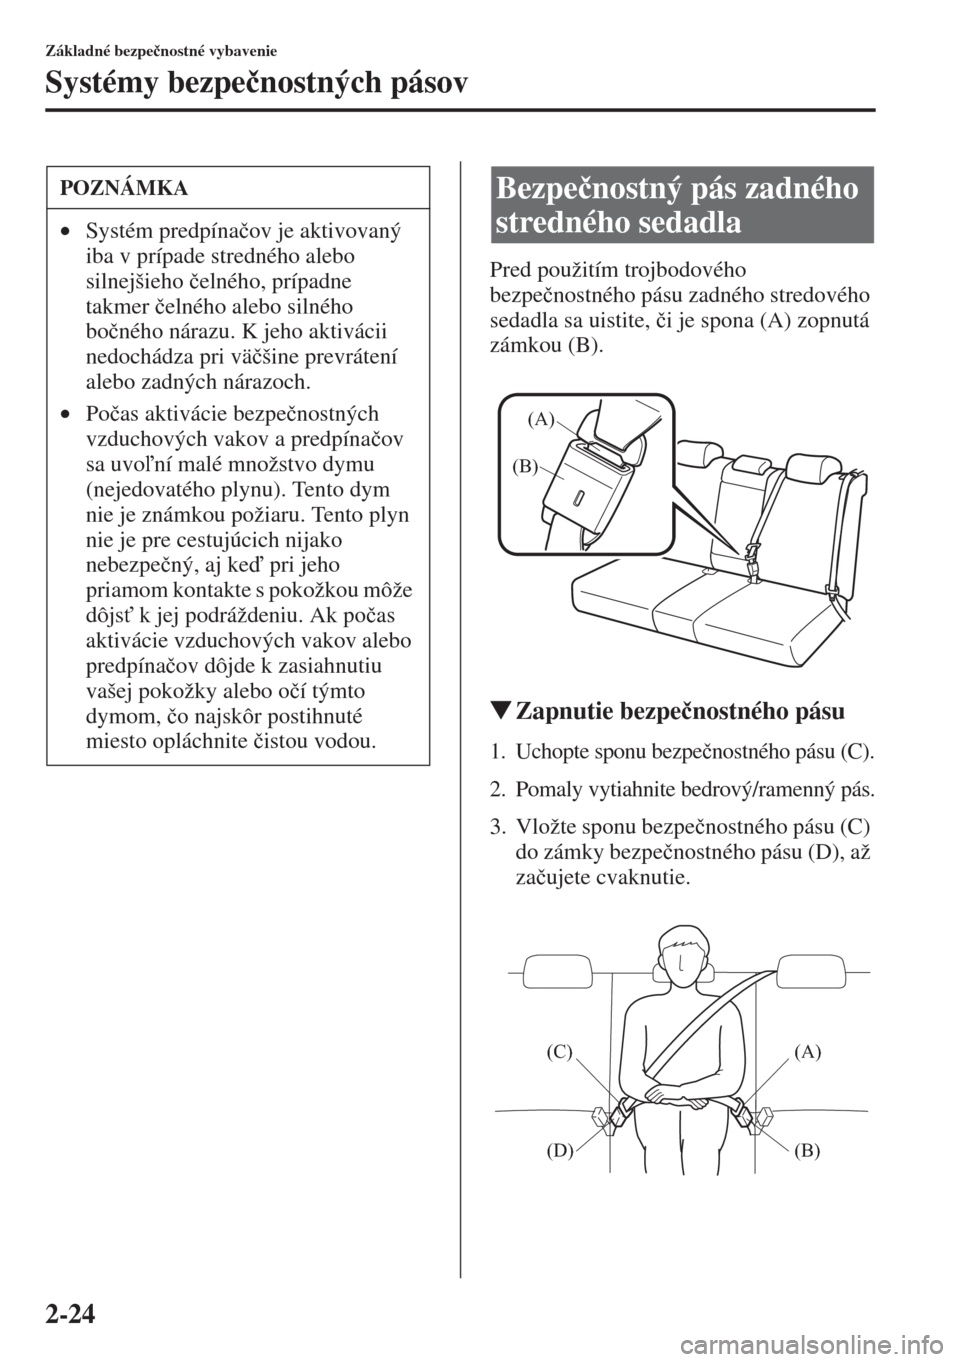 MAZDA MODEL CX-5 2015  Užívateľská príručka (in Slovak) 2-24
Základné bezpe�þnostné vybavenie
Systémy bezpe�þnostných pásov
Pred použitím trojbodového 
bezpe�þnostného pásu zadného stredového 
sedadla sa uistite, �þi je spona (A) zopnutá 